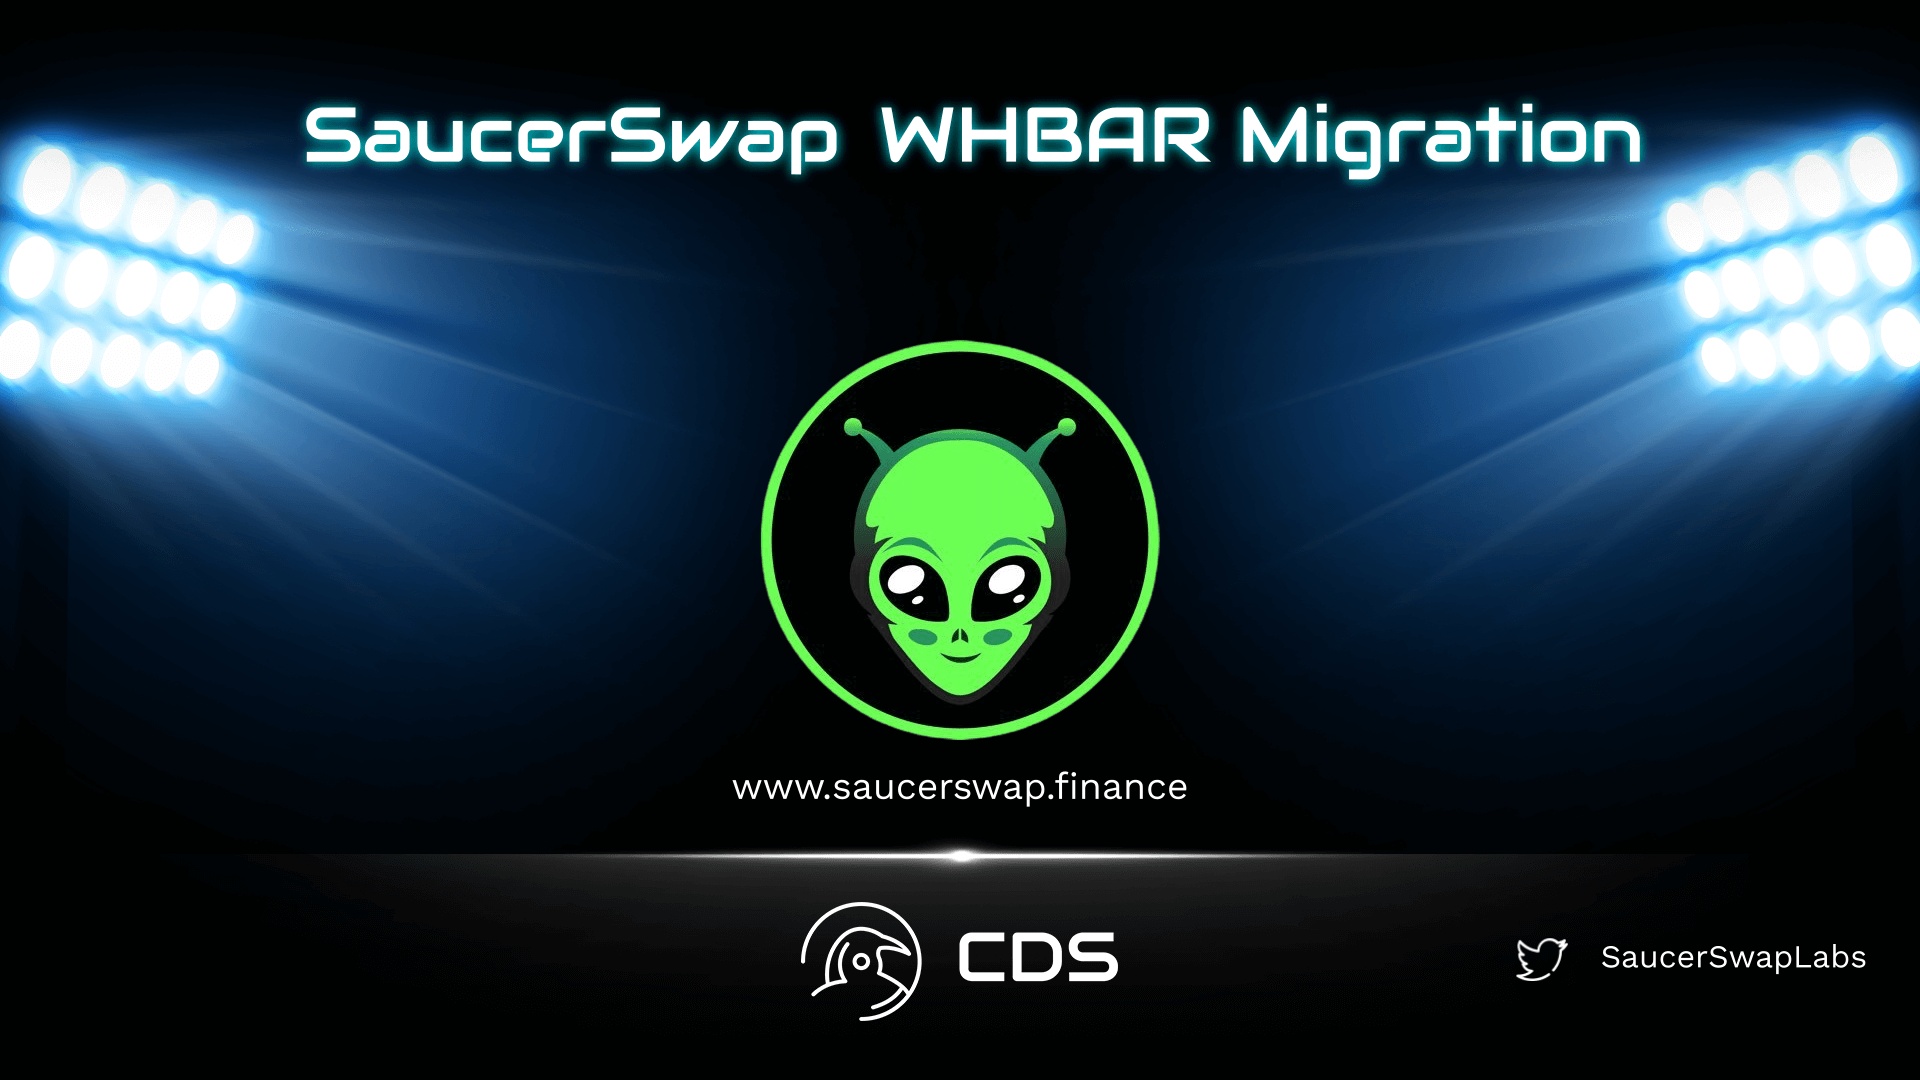 saucerswap whbar migration